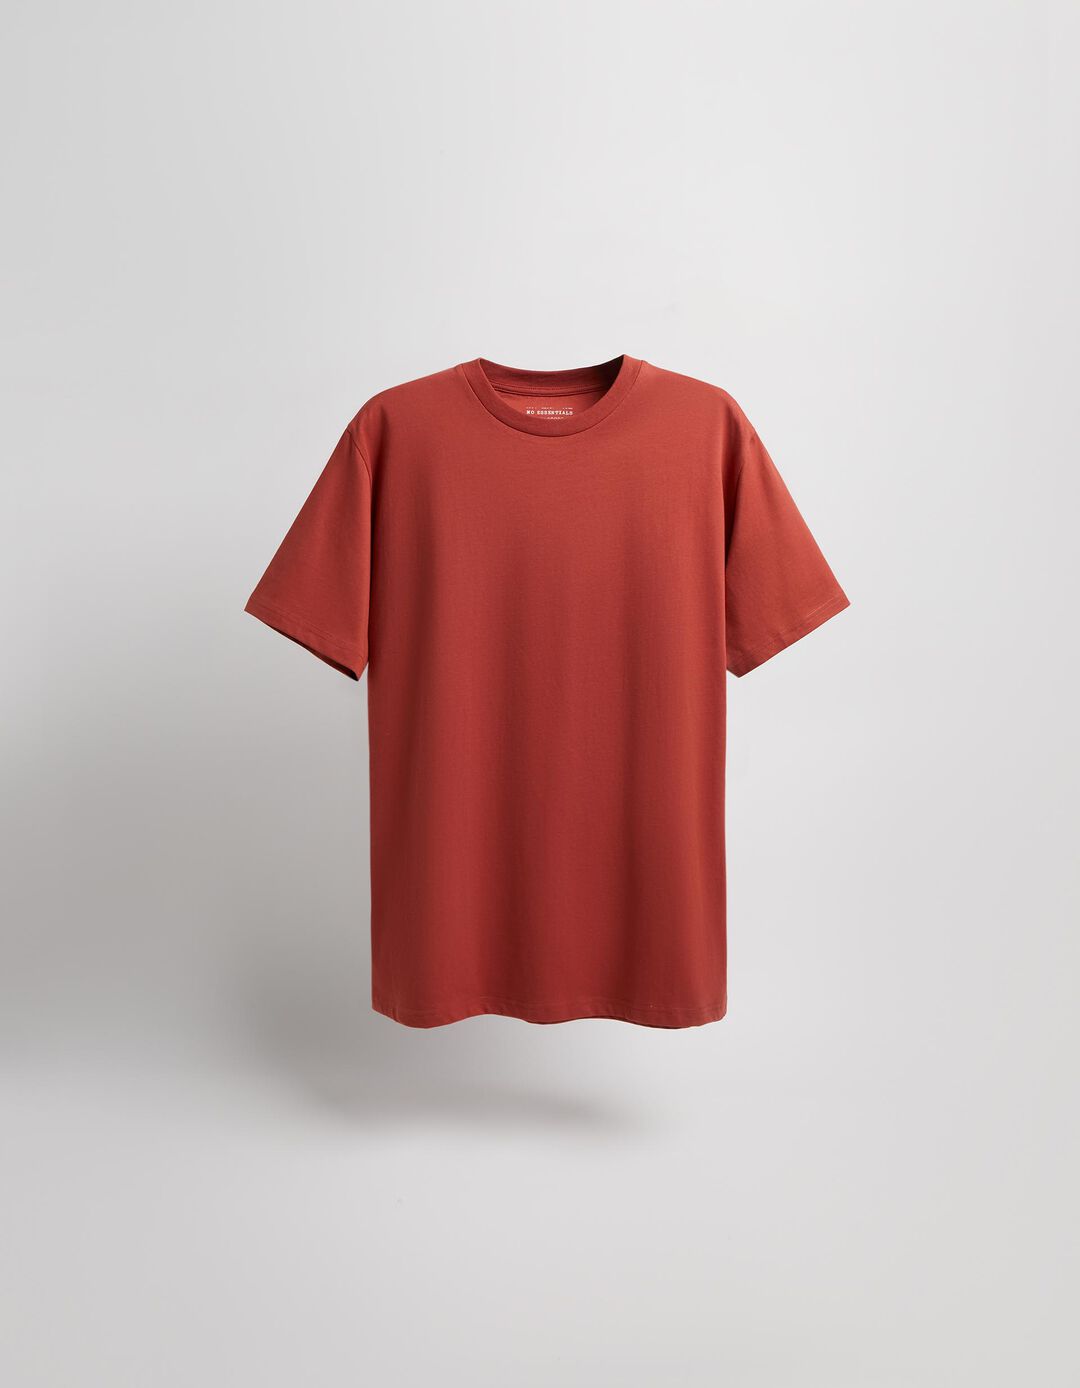 T-shirt Decote Redondo, Homem, Laranja